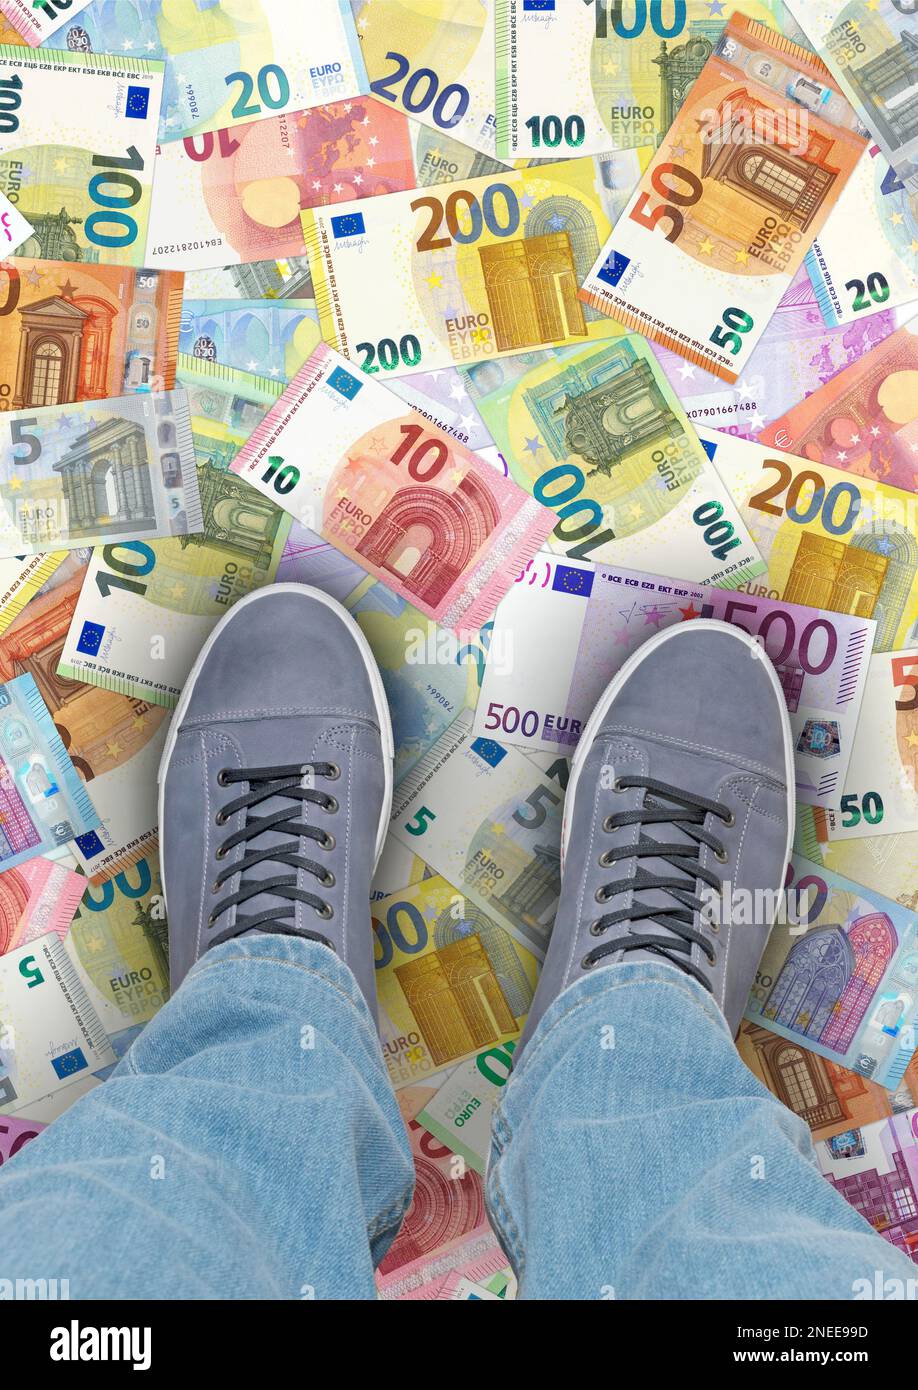 Das Geld liegt auf der Straße. Eine Person steht auf Euro-Banknoten im Porträtformat Stockfoto